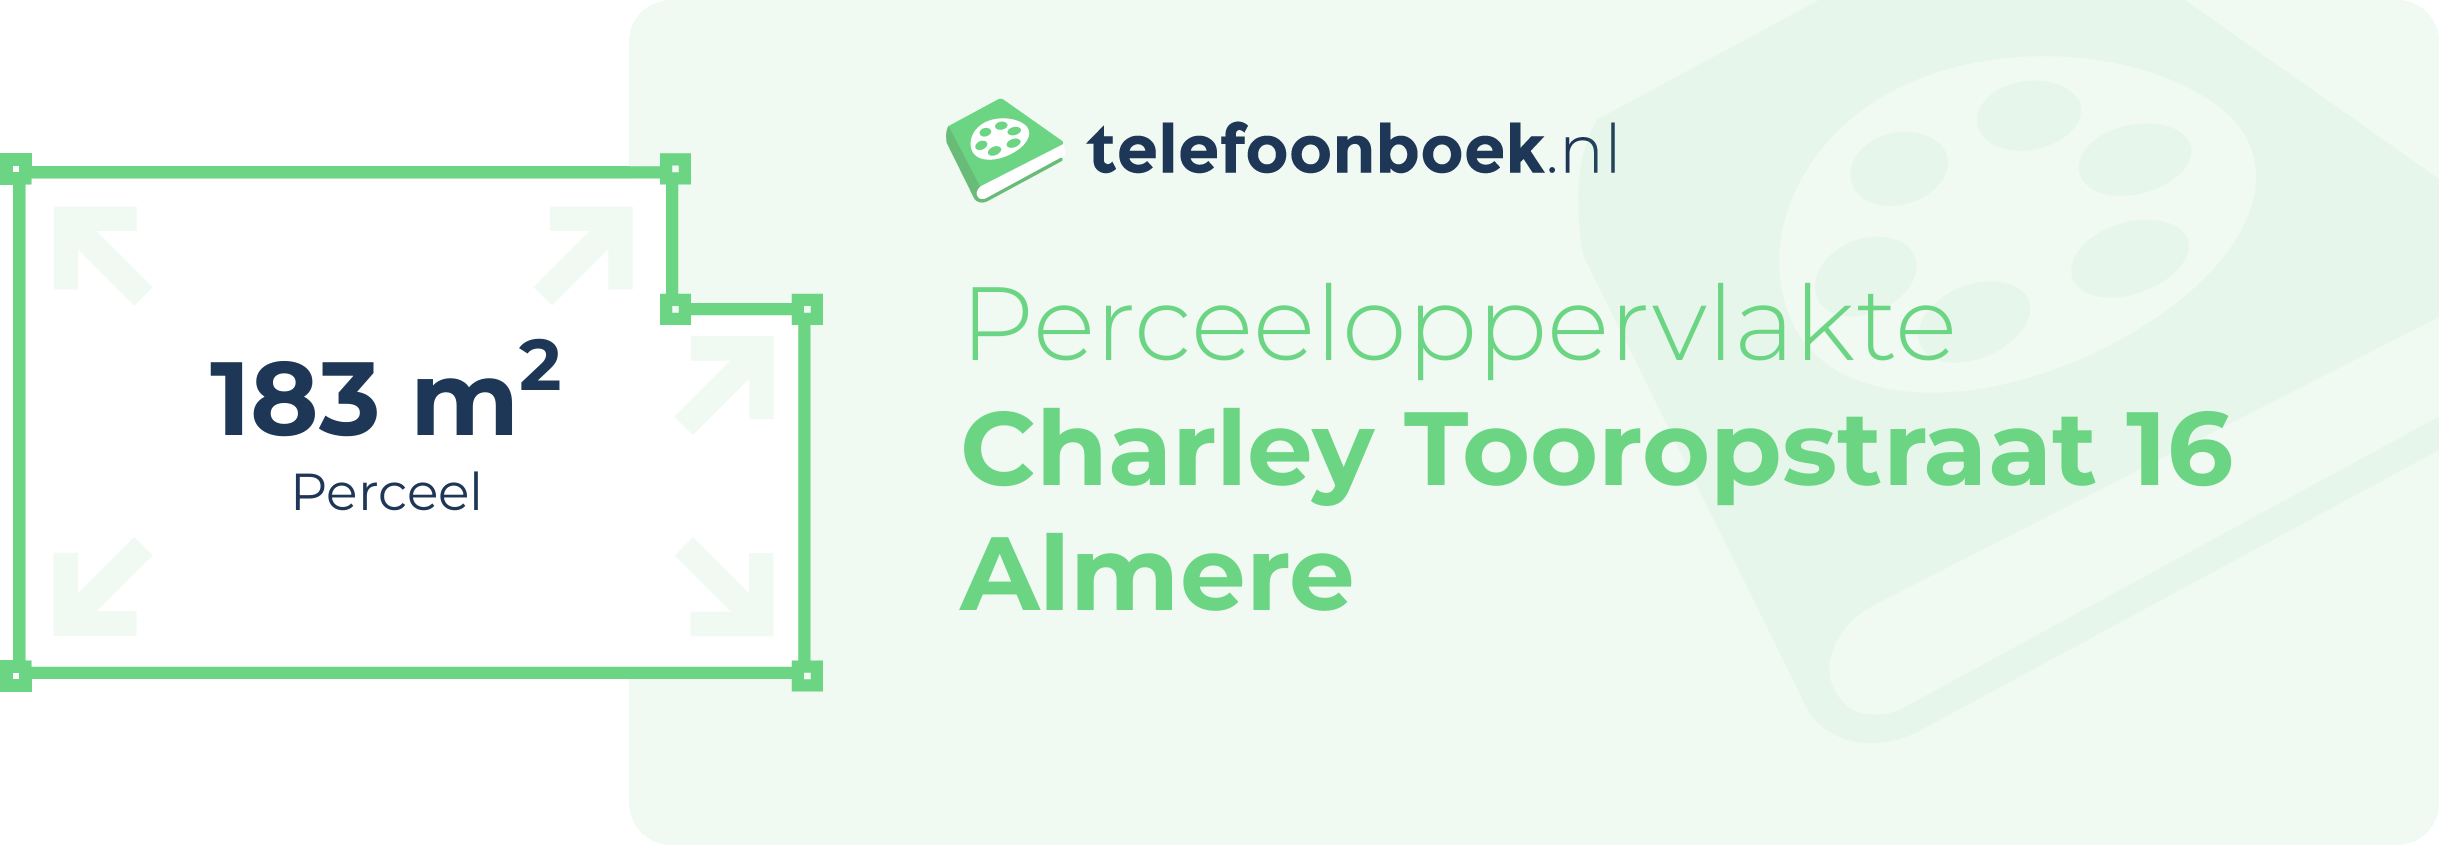 Perceeloppervlakte Charley Tooropstraat 16 Almere